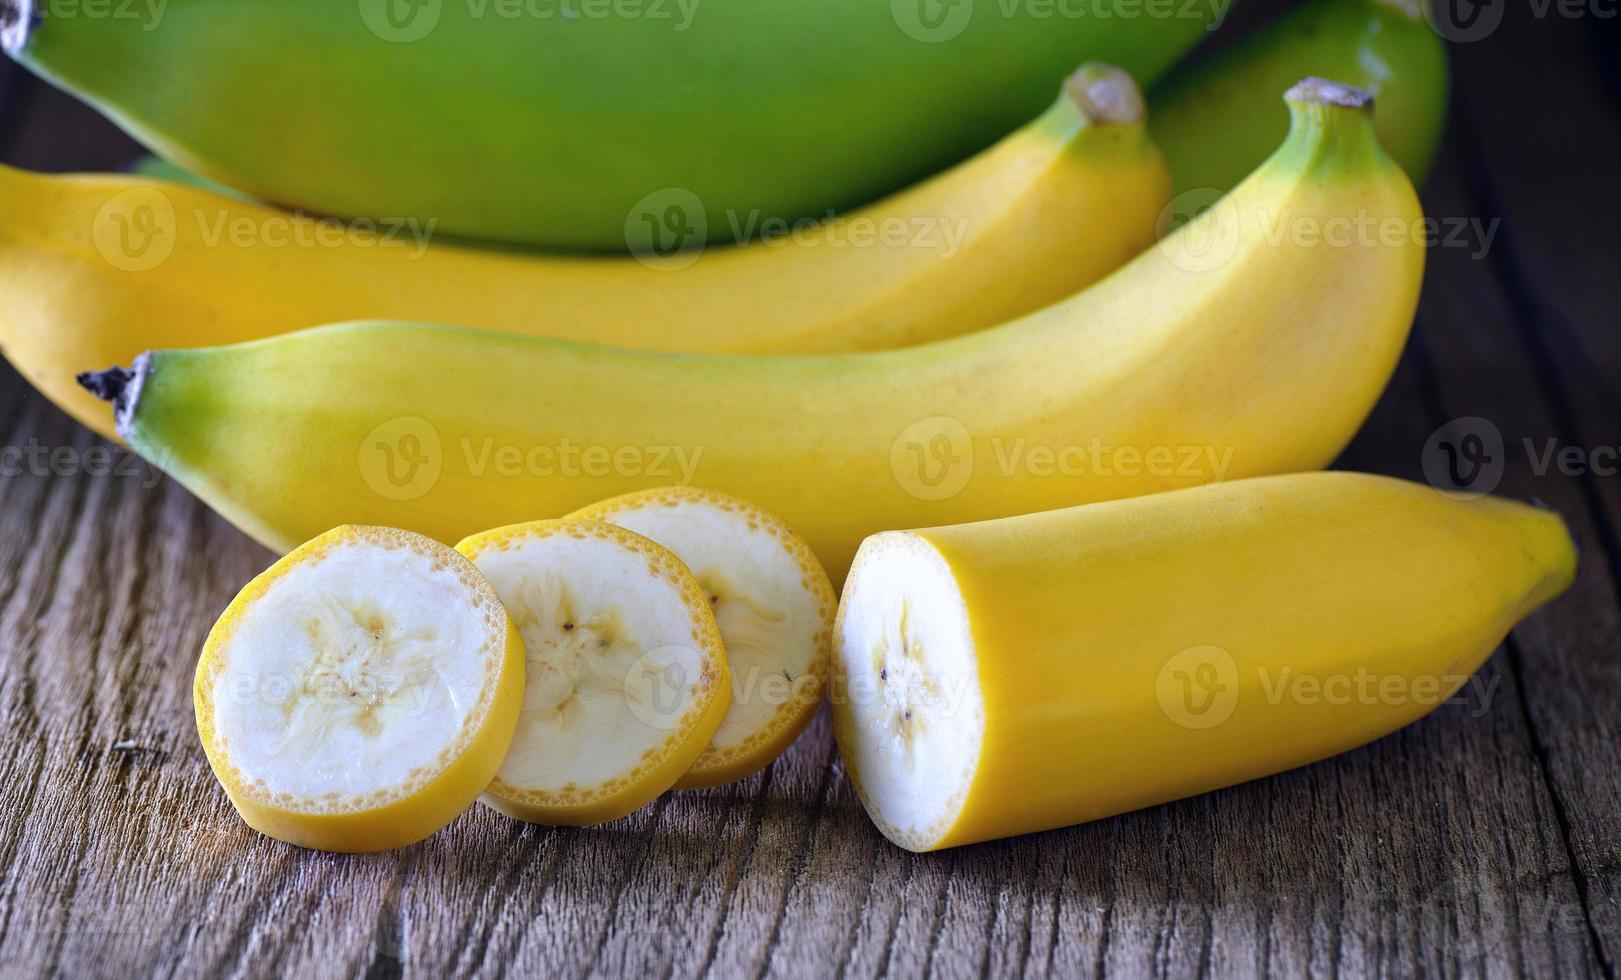 Banana on wood photo